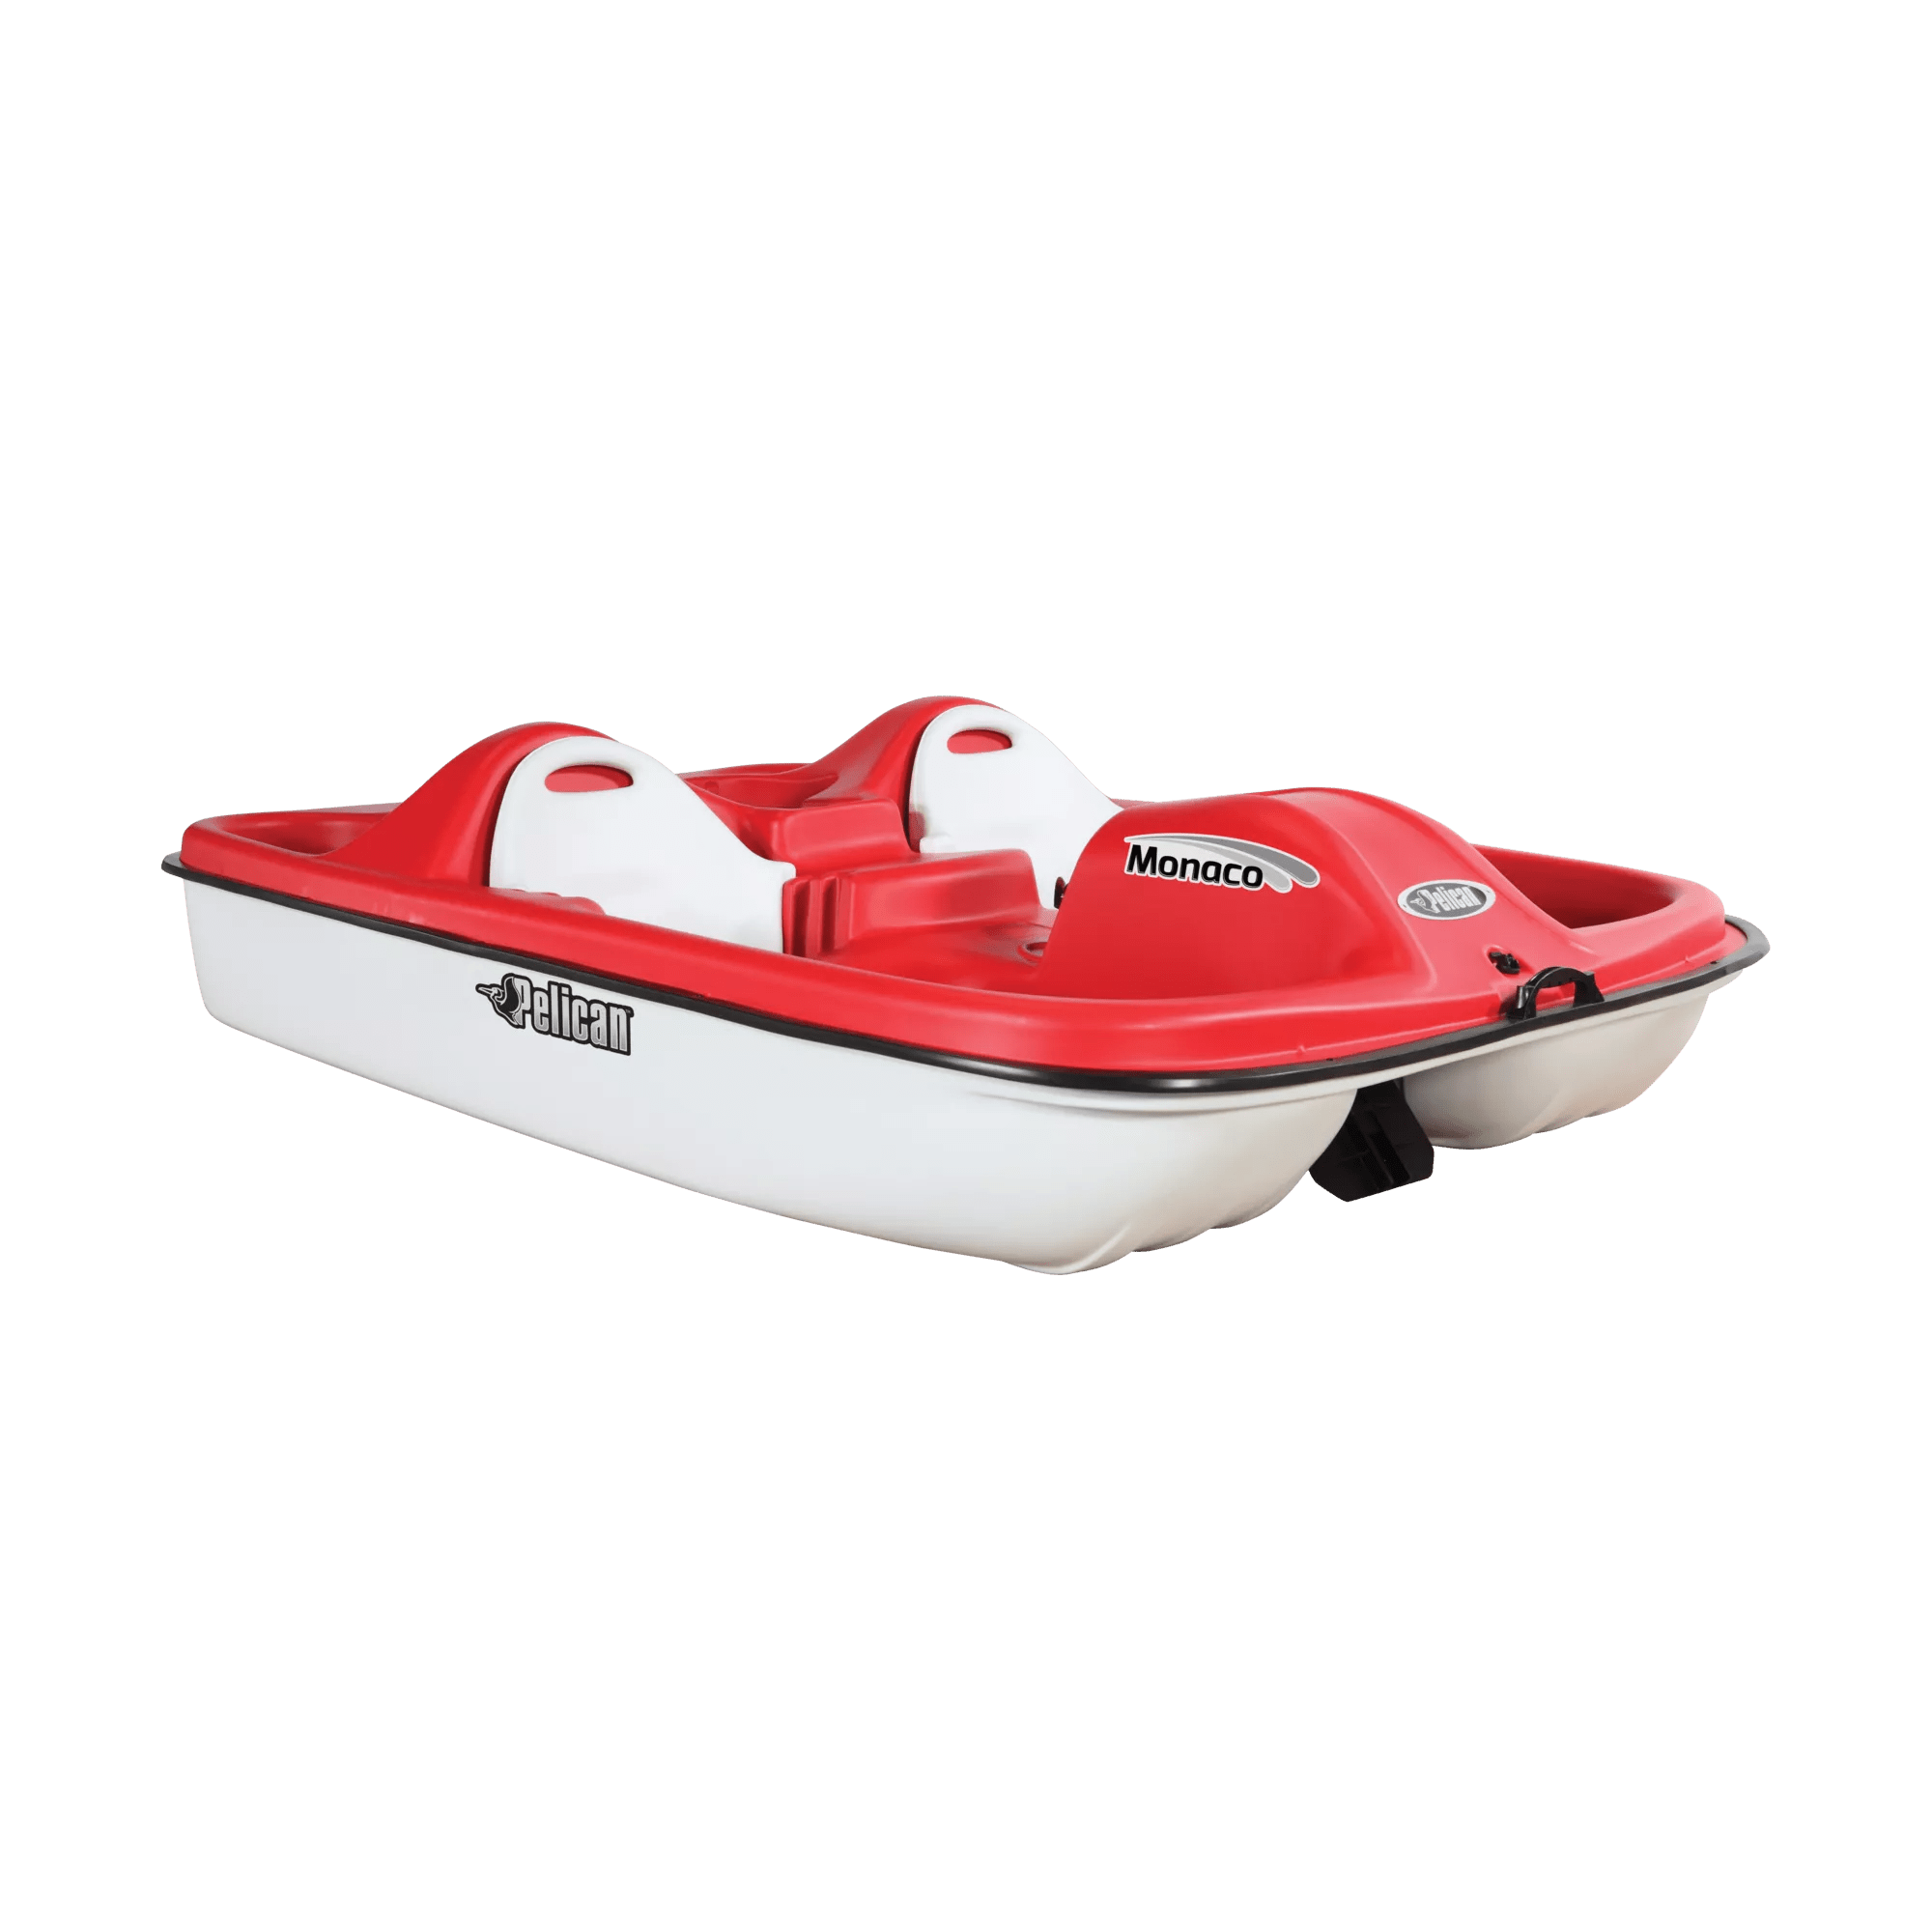 PELICAN - Monaco Pedal Boat - Red - HHA25P501 - ISO 